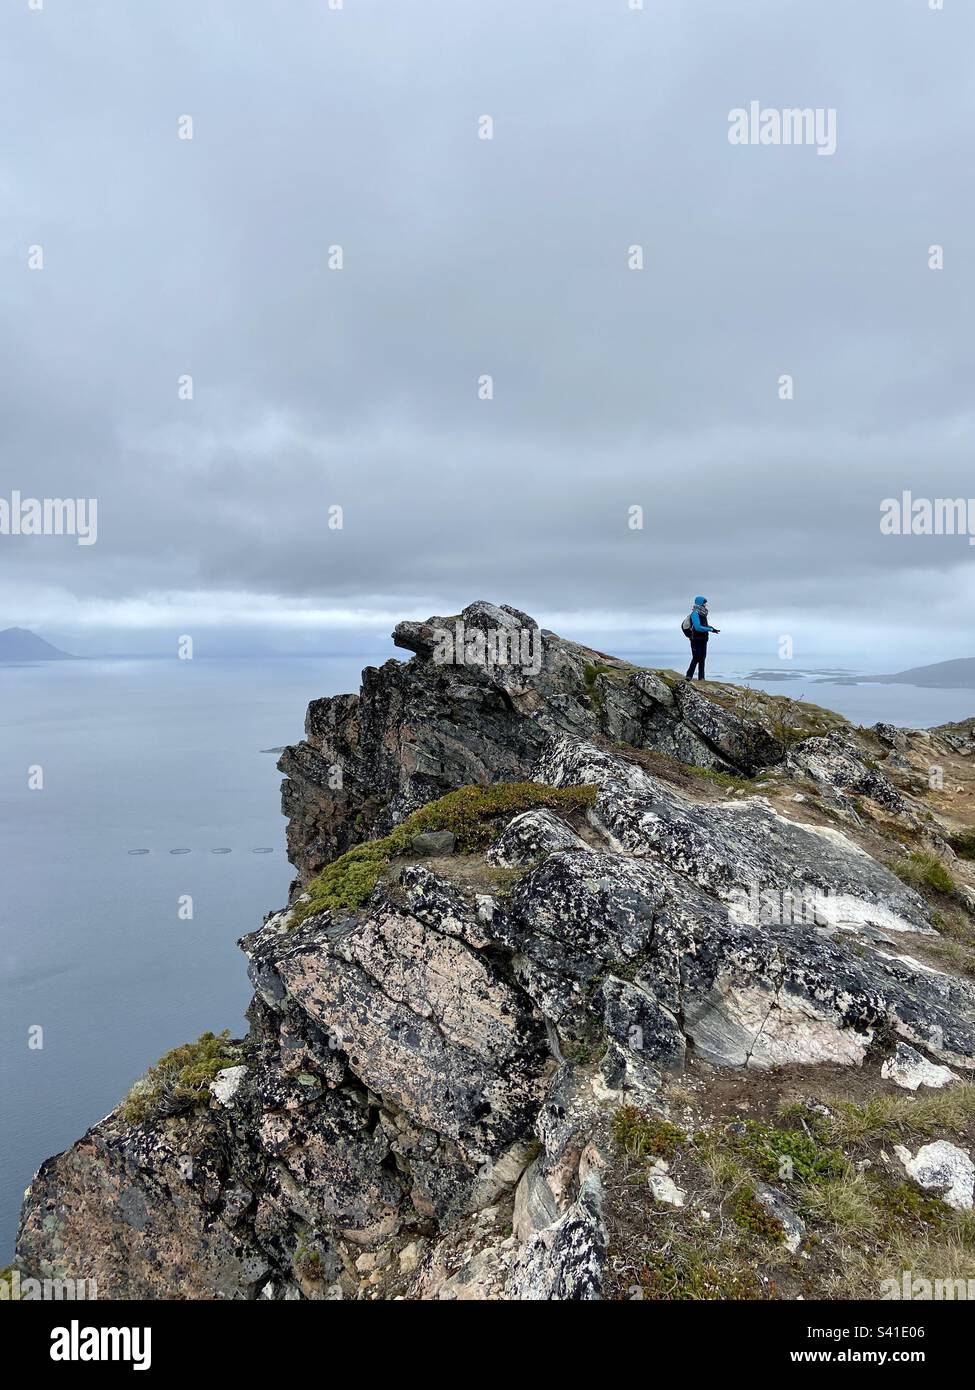 Auf dem Gipfel des Berges Keipen auf den Lofoten-Inseln, Norwegen. Lohnende Wanderung mit guter Aussicht vom Gipfel in alle Richtungen. Wanderer stehen, es gibt auch leichten Regen, der von den Wolken kommt. Stockfoto